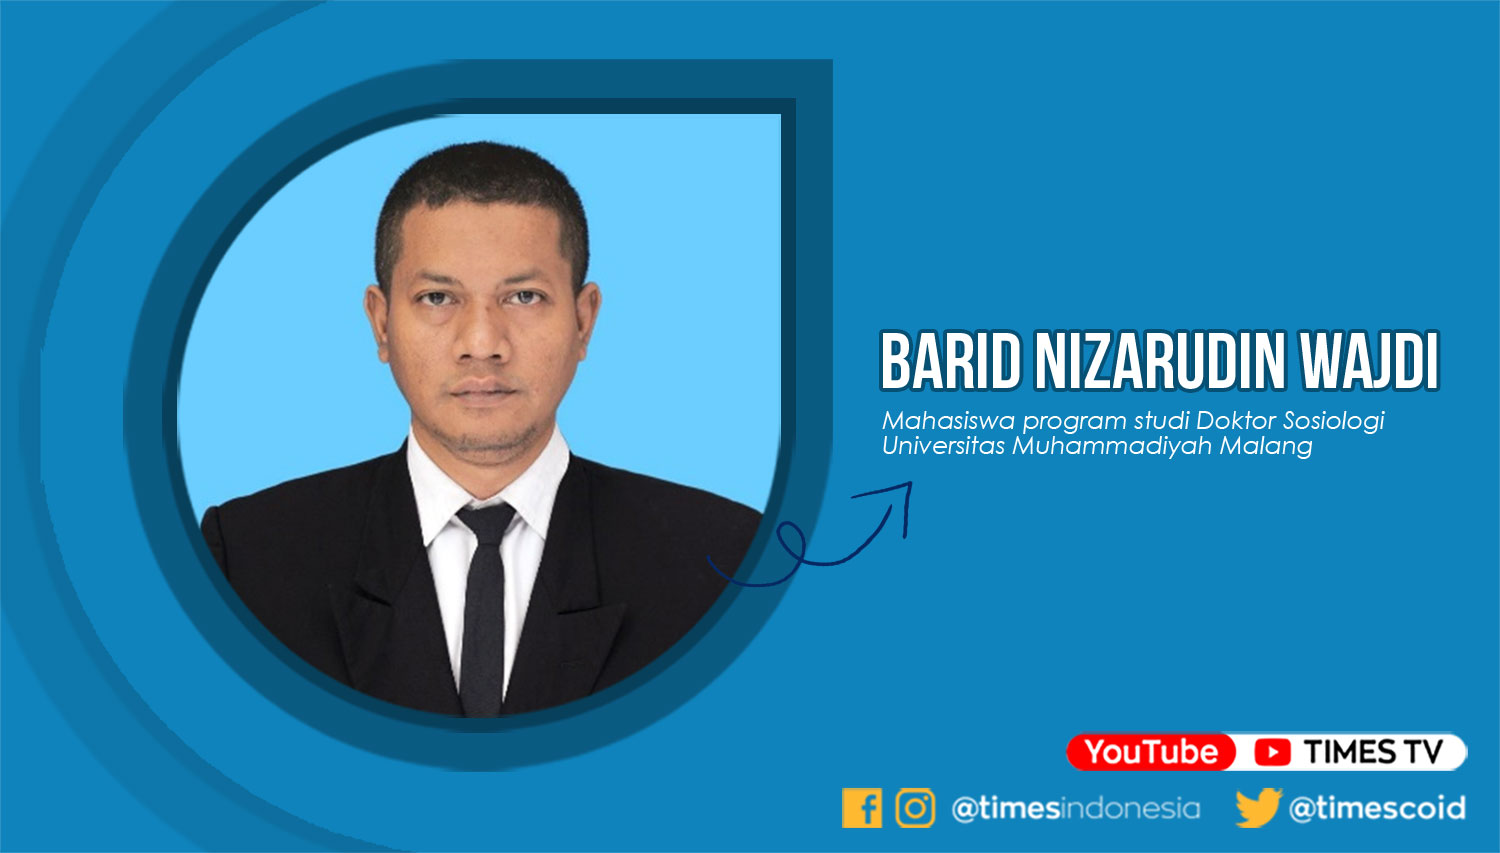 Barid Nizarudin Wajdi, Mahasiswa progam studi Doktor Sosiologi Universitas Muhammadiyah Malang.